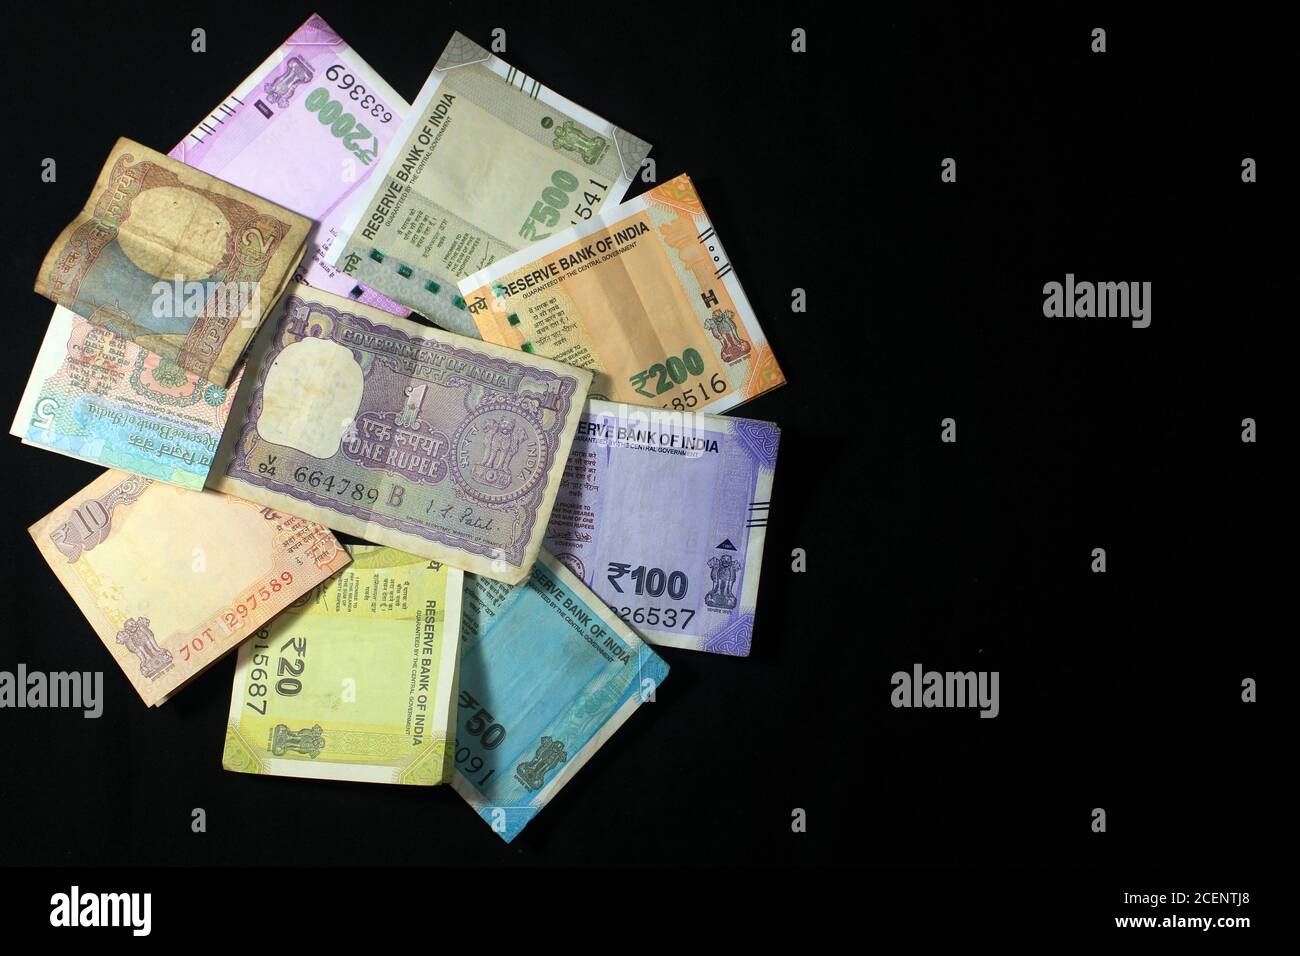 Aujourd’hui et dans l’ancienne monnaie indienne. billets et pièces de 50, 100, 200, 500, 2000 roupies. Monnaie indienne isolée sur fond noir. Banque D'Images